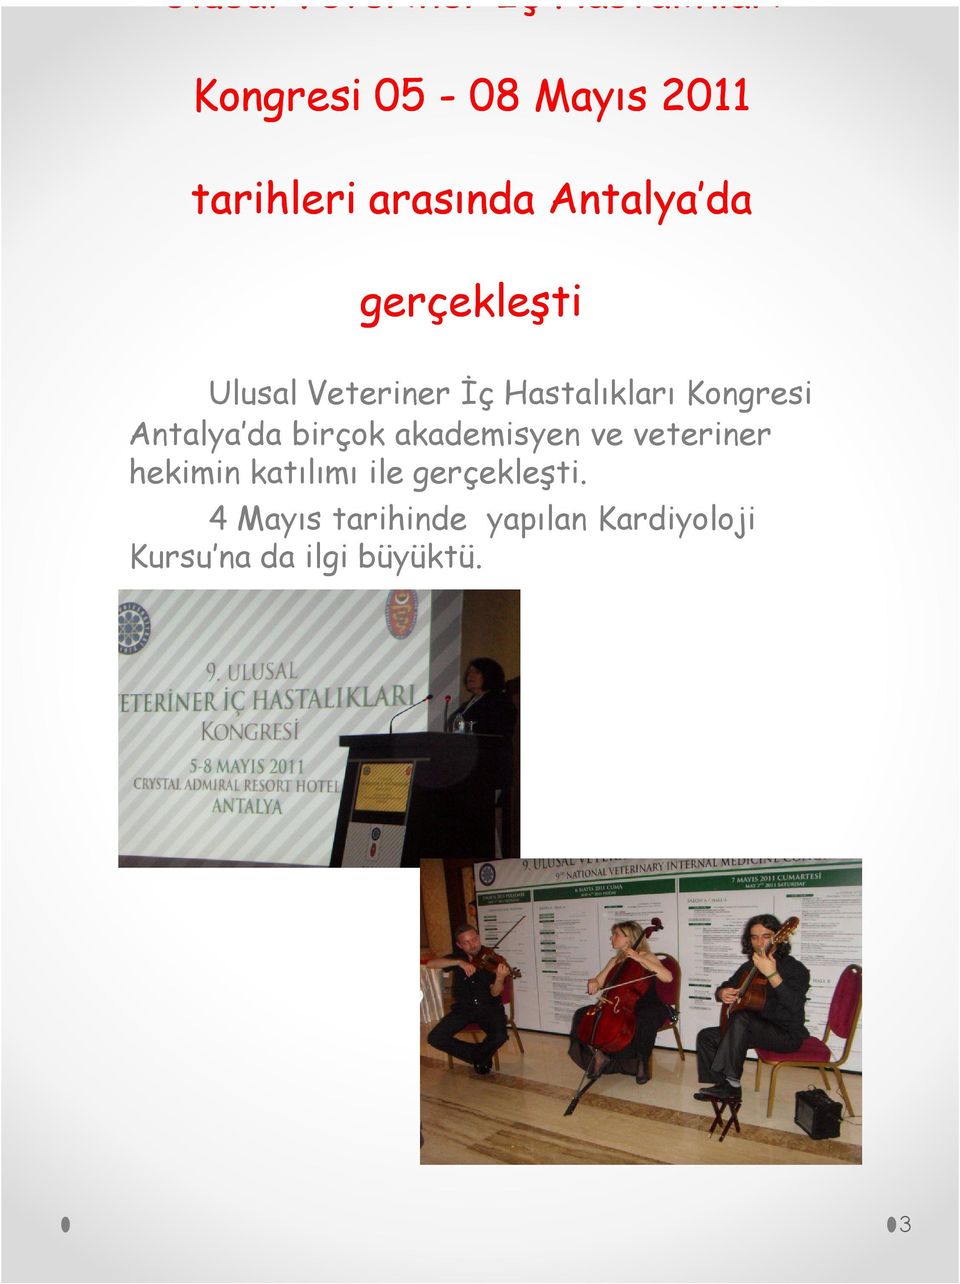 Kongresi Antalya da birçok akademisyen ve veteriner hekimin katılımı